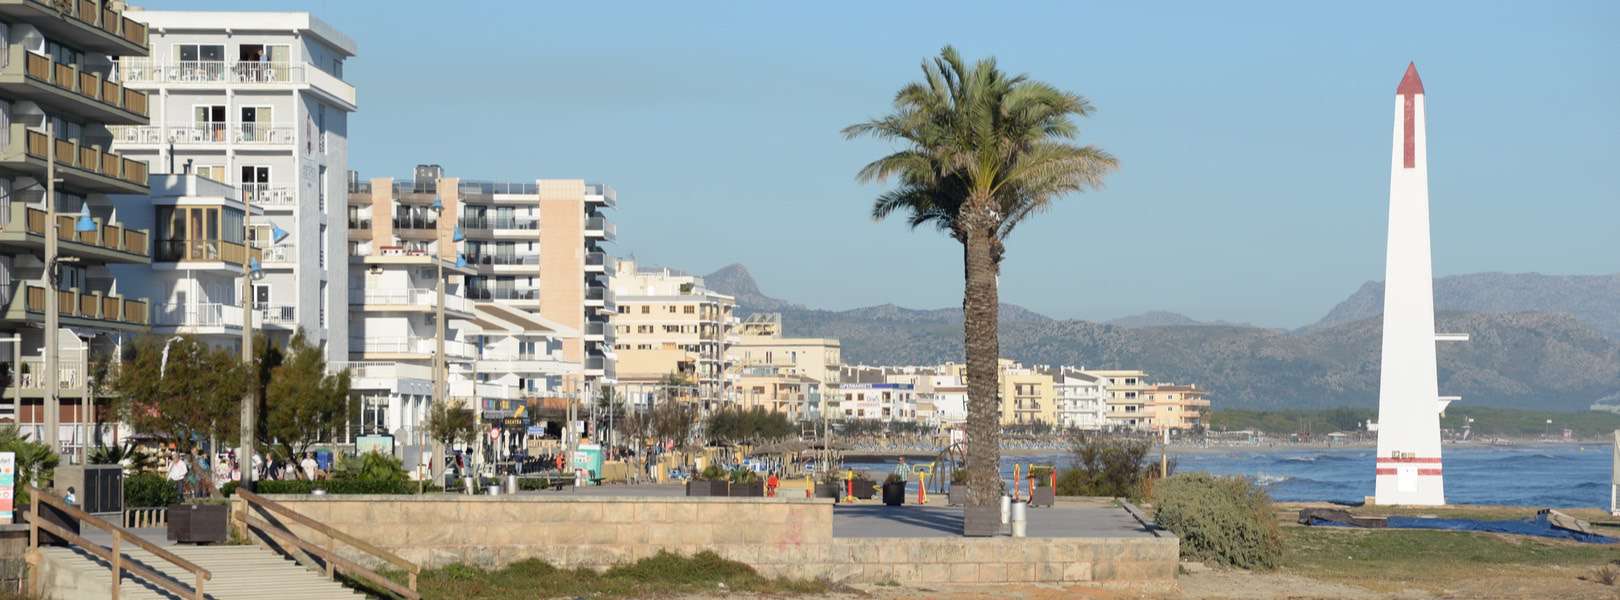 Blick auf den Strand von Ca'n Picafort Mallorca